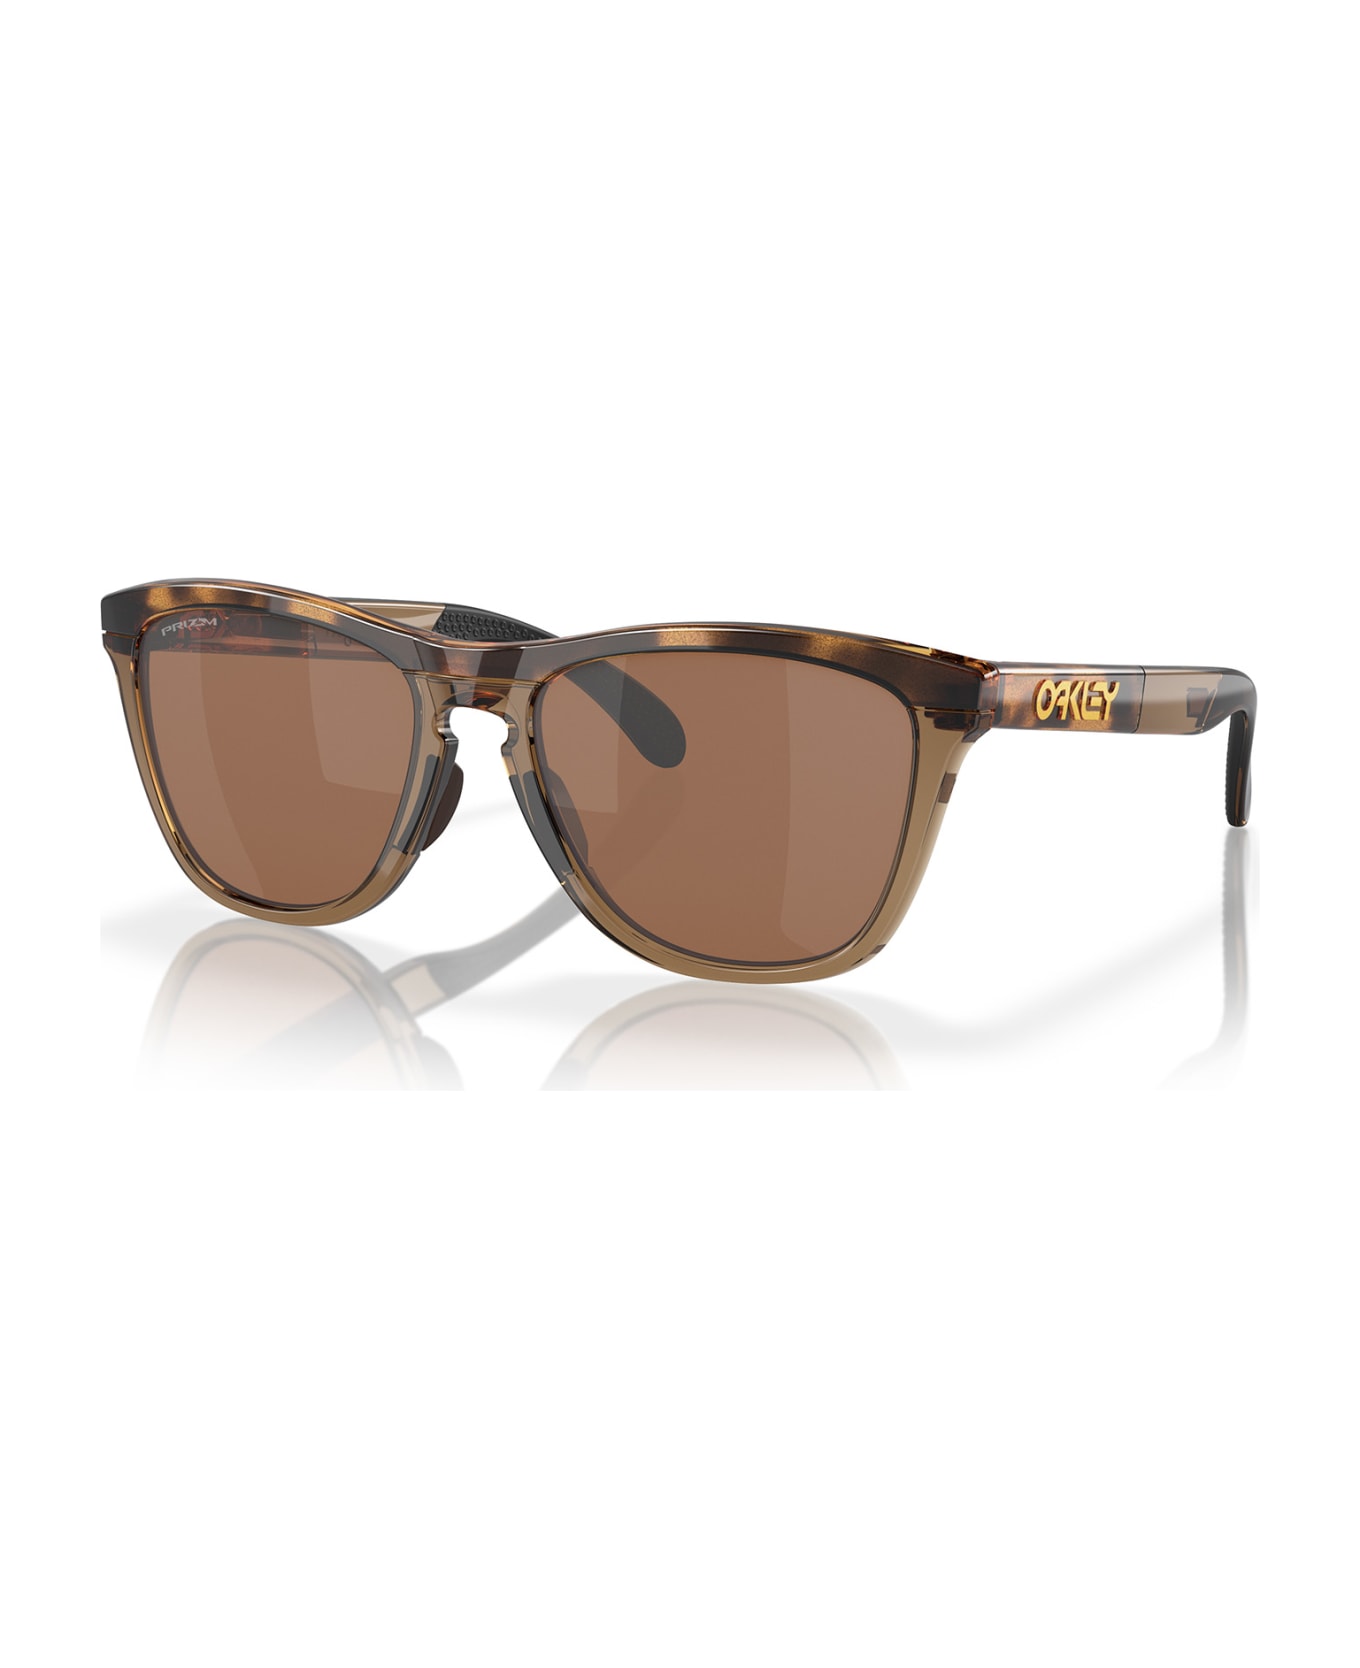 Oakley Oo9284 Brown Tortoise / Brown Smoke Sunglasses - Brown Tortoise / Brown Smoke サングラス